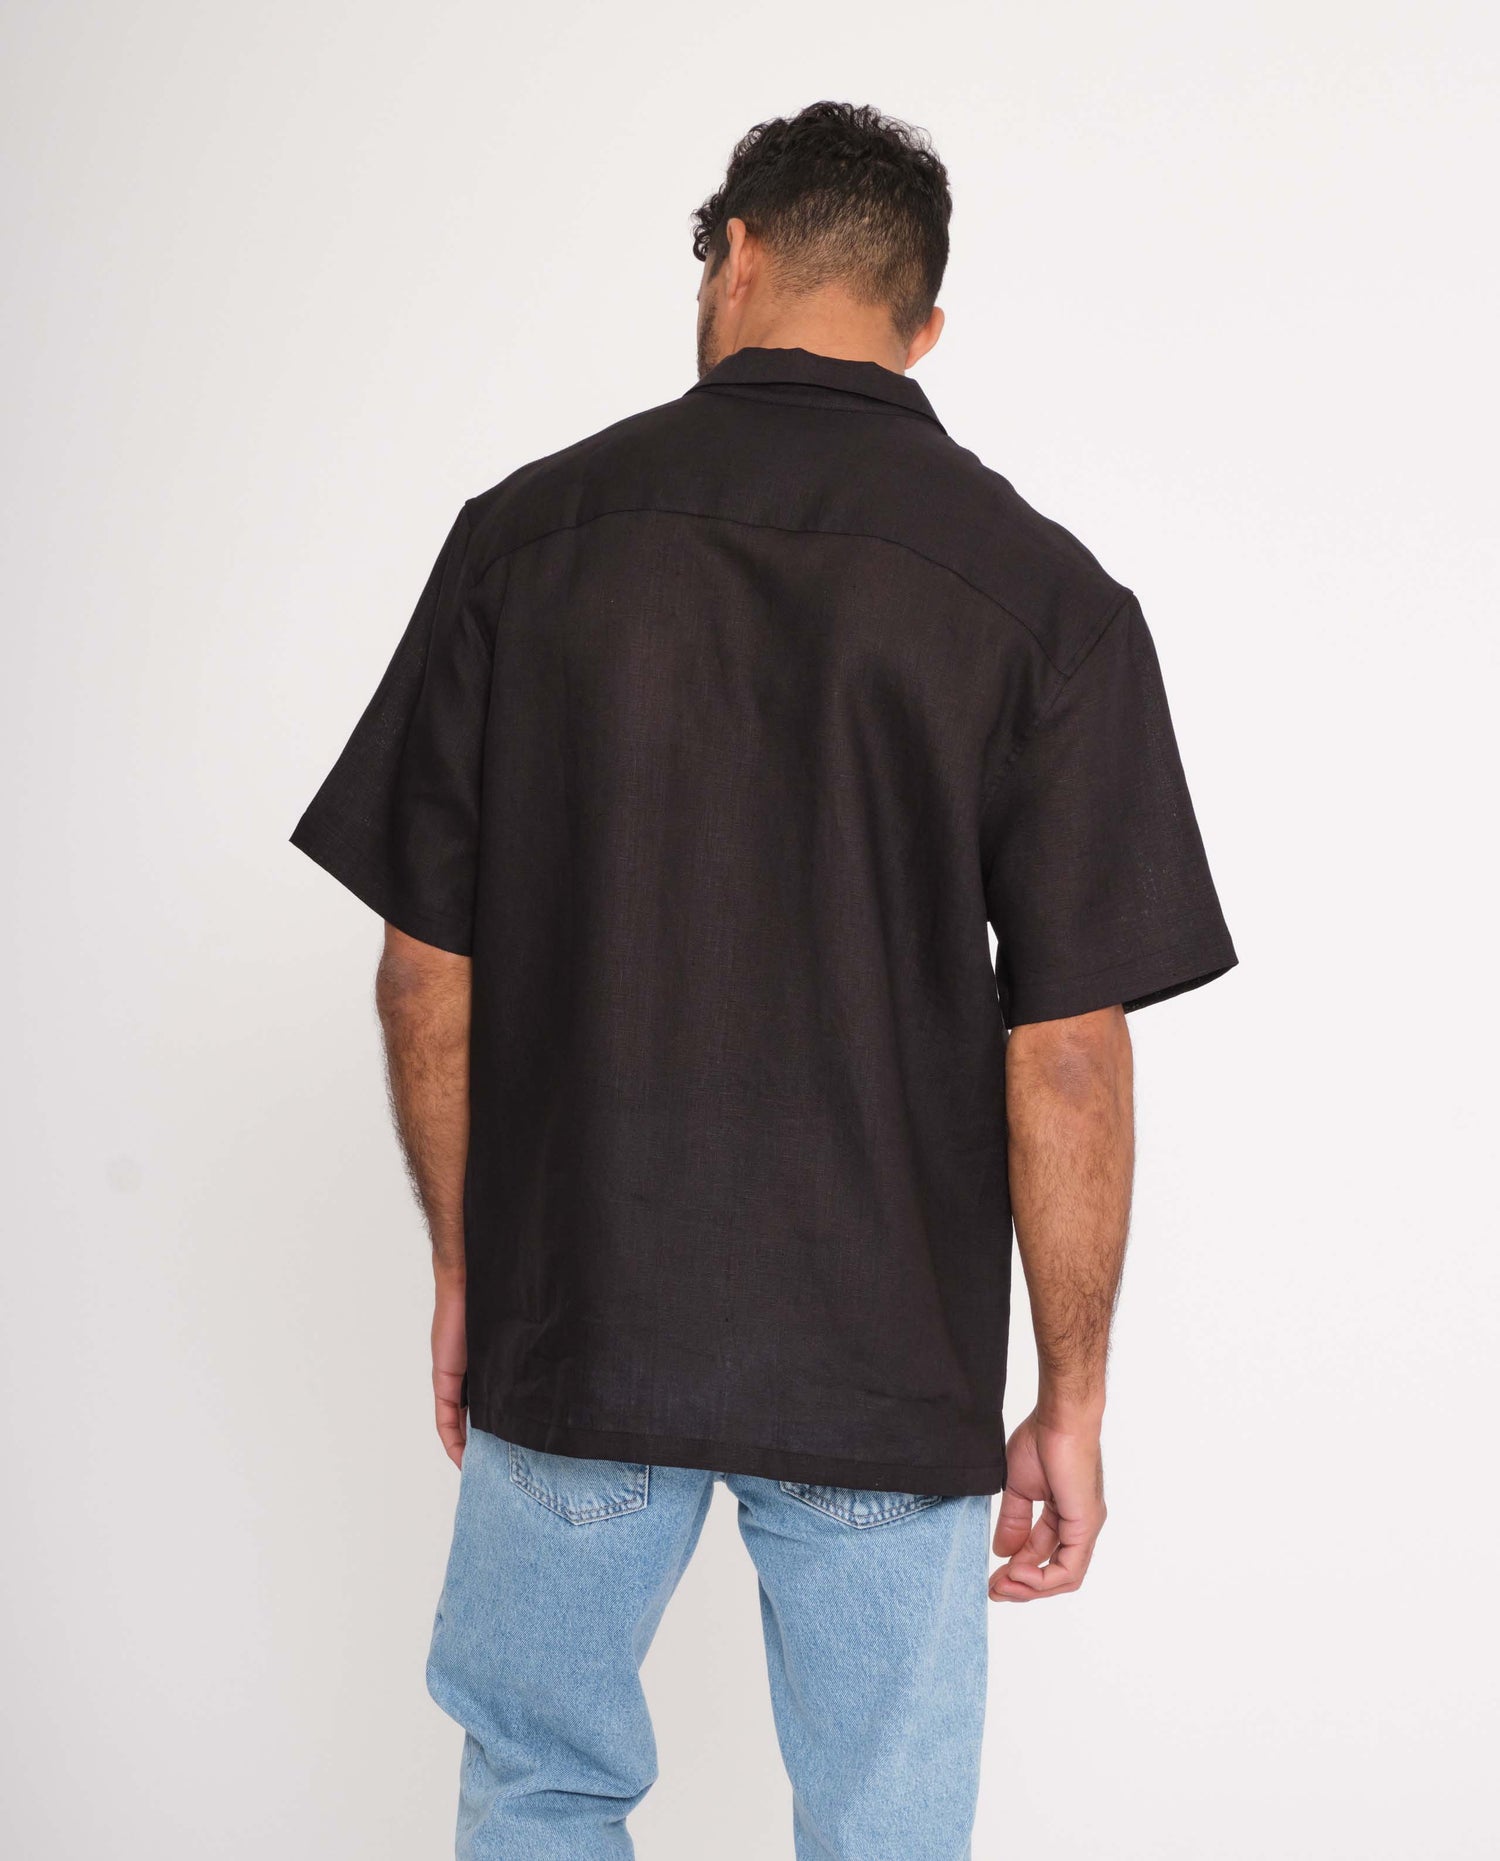 marché commun rotholz homme chemise manches courtes lin noir